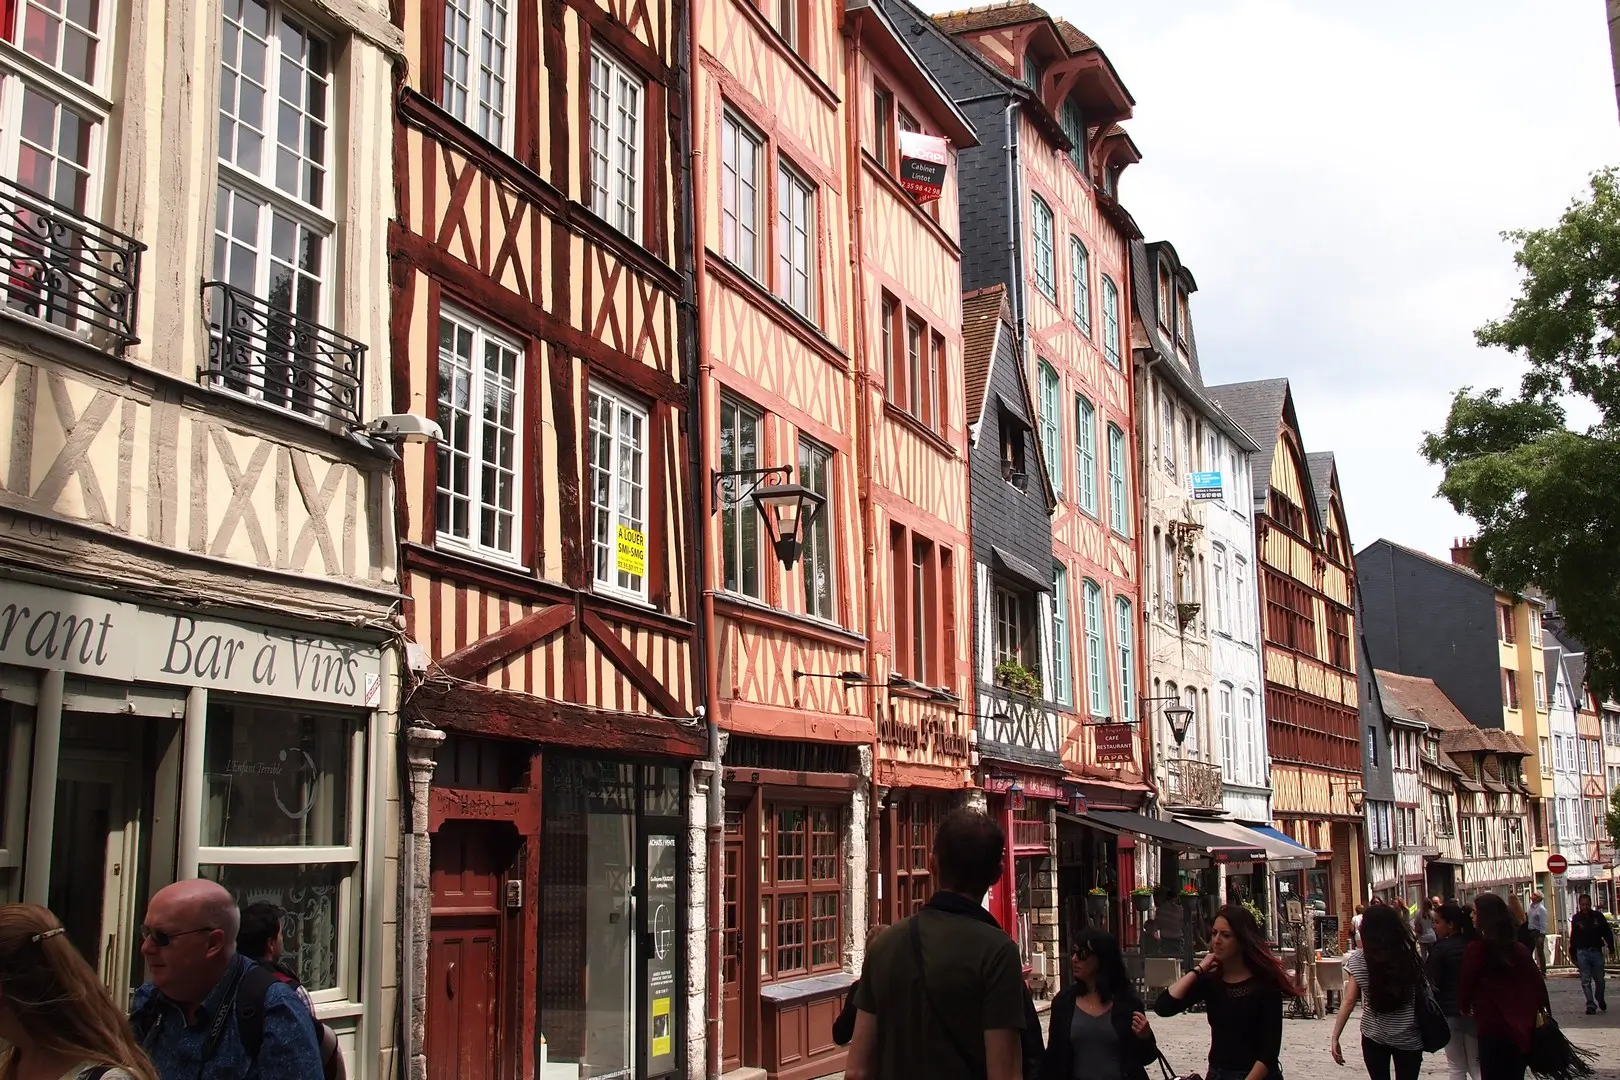 Rouen old town / Rouen Altstadt